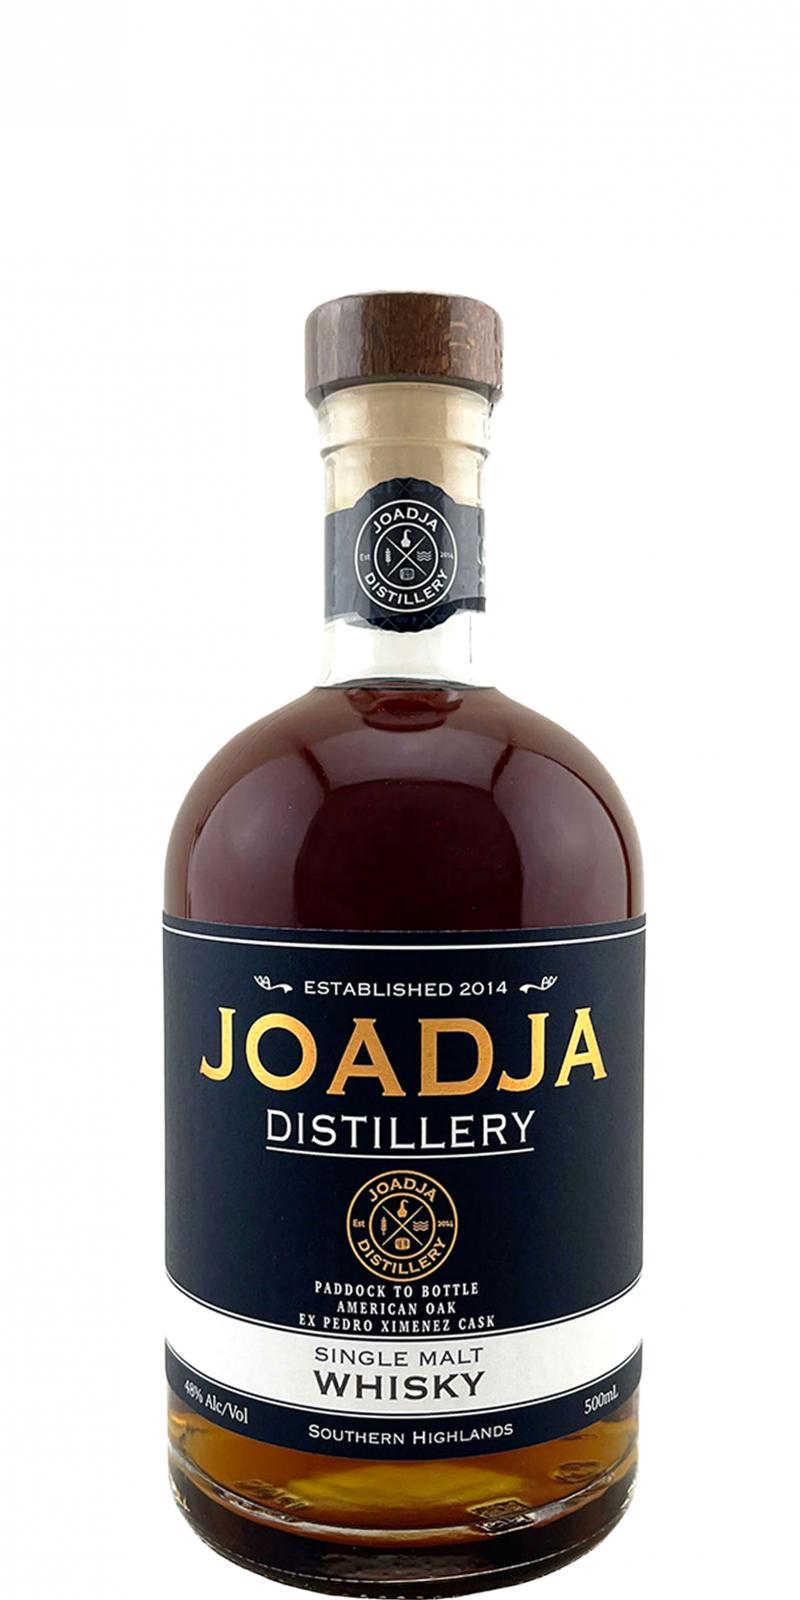 Joadja Single Malt Whisky